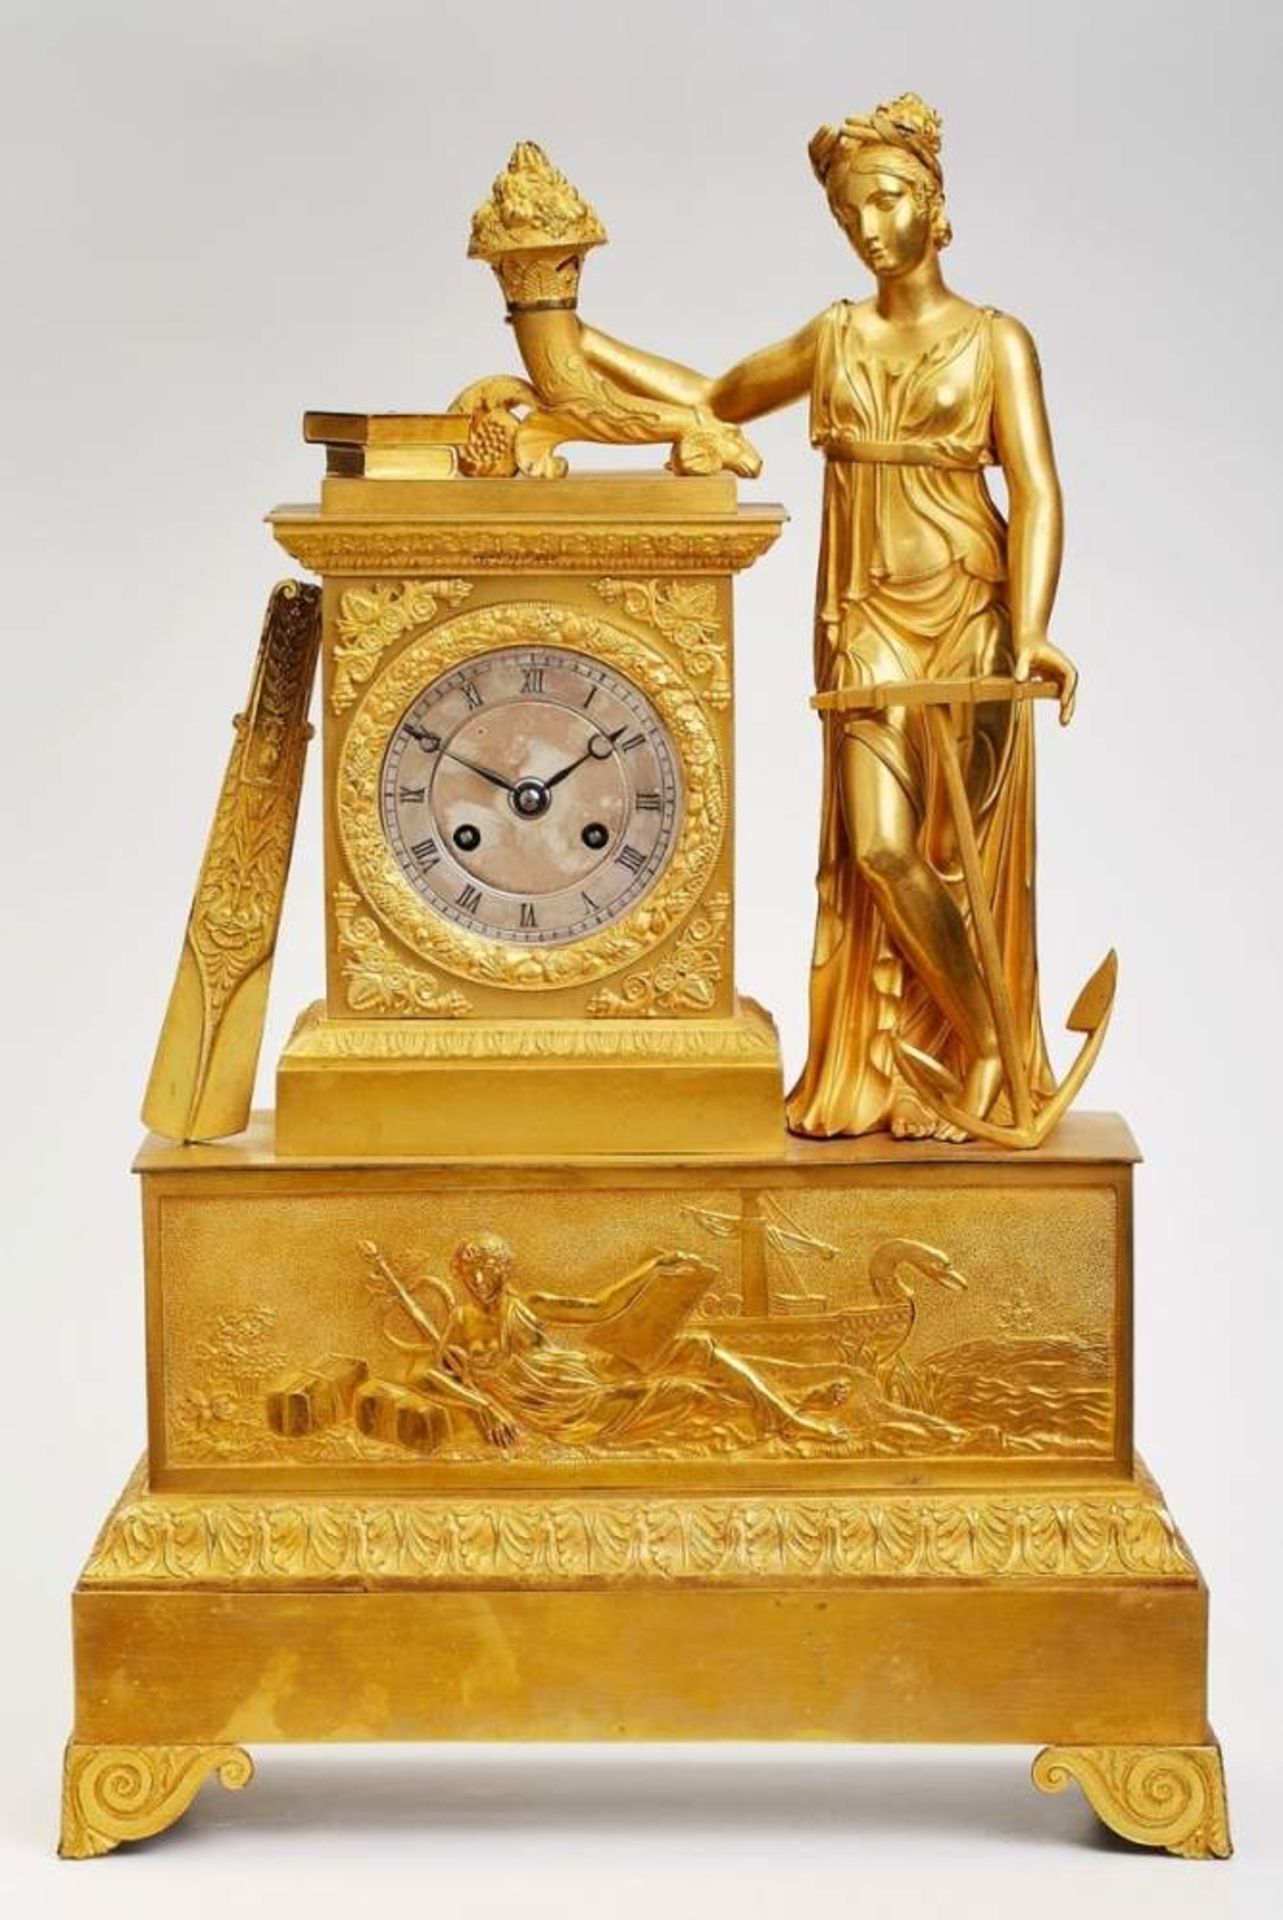 Gr. Figurenuhr "Allegorie auf denHandel" Frankreich um 1810 Bronze, matt u. glänzend feuervergoldet.